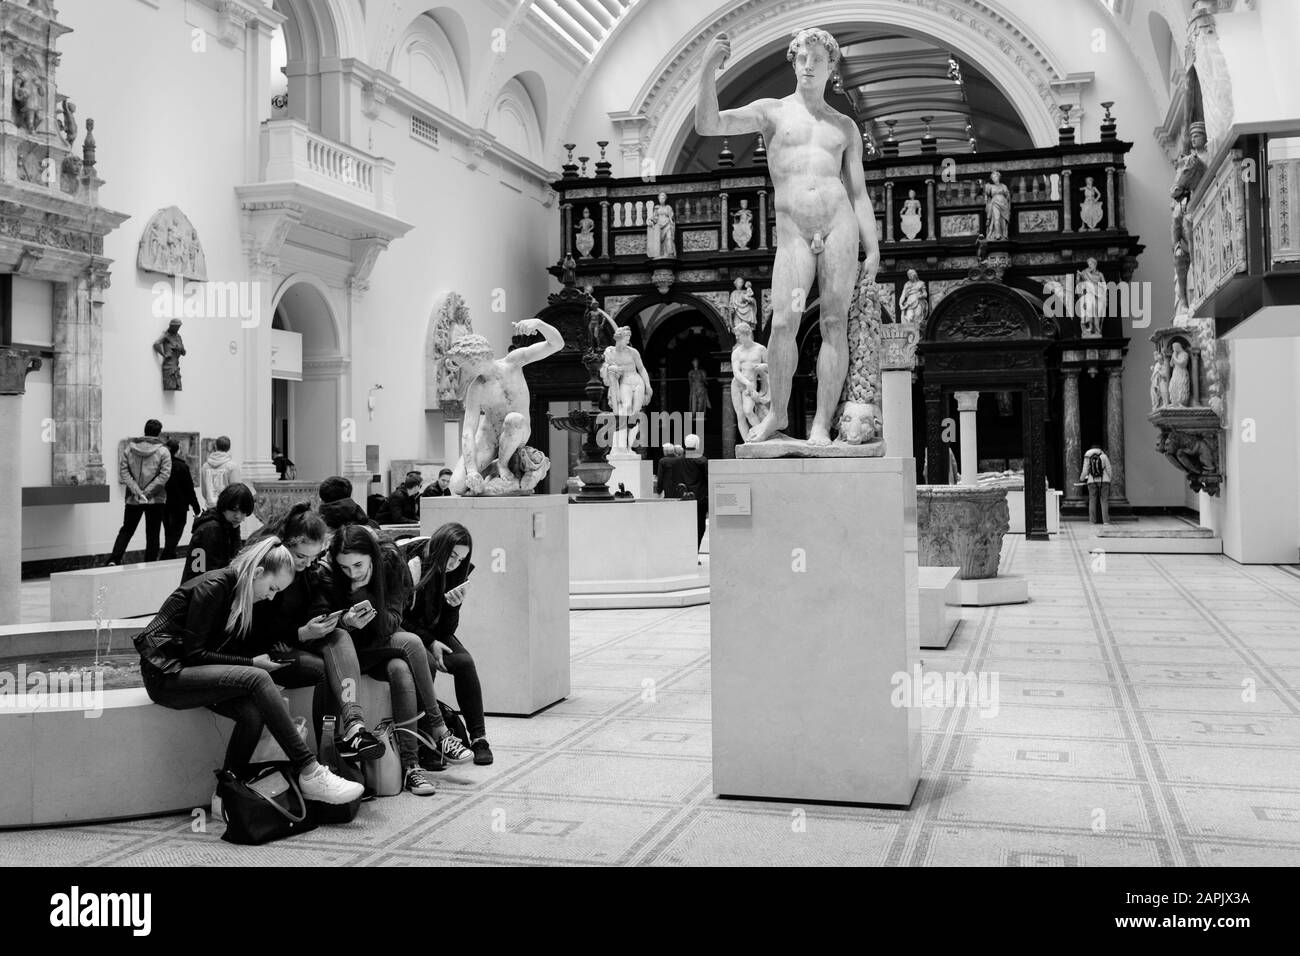 Fotografia in bianco e nero di Londra: Un gruppo di ragazze adolescenti studia i loro smartphone nella galleria di sculture classiche del V&A Museum, Londra, Regno Unito Foto Stock